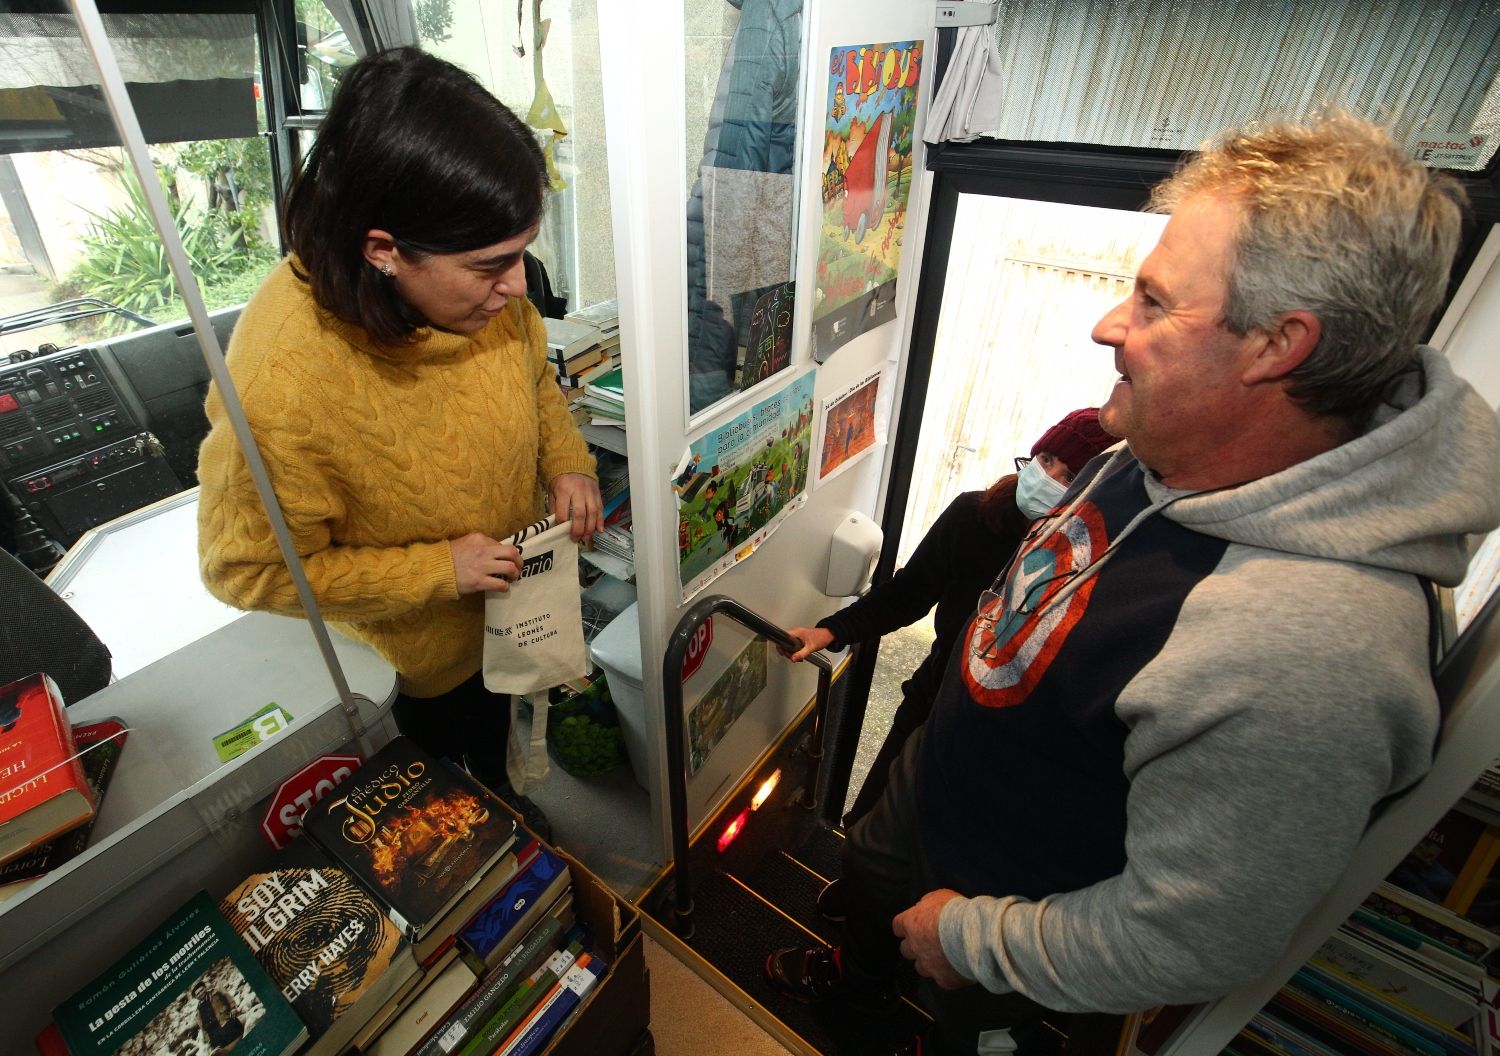 El Bibliobús de León cumple 50 años: Más que un servicio de libros, una conexión vital en los pueblos olvidados